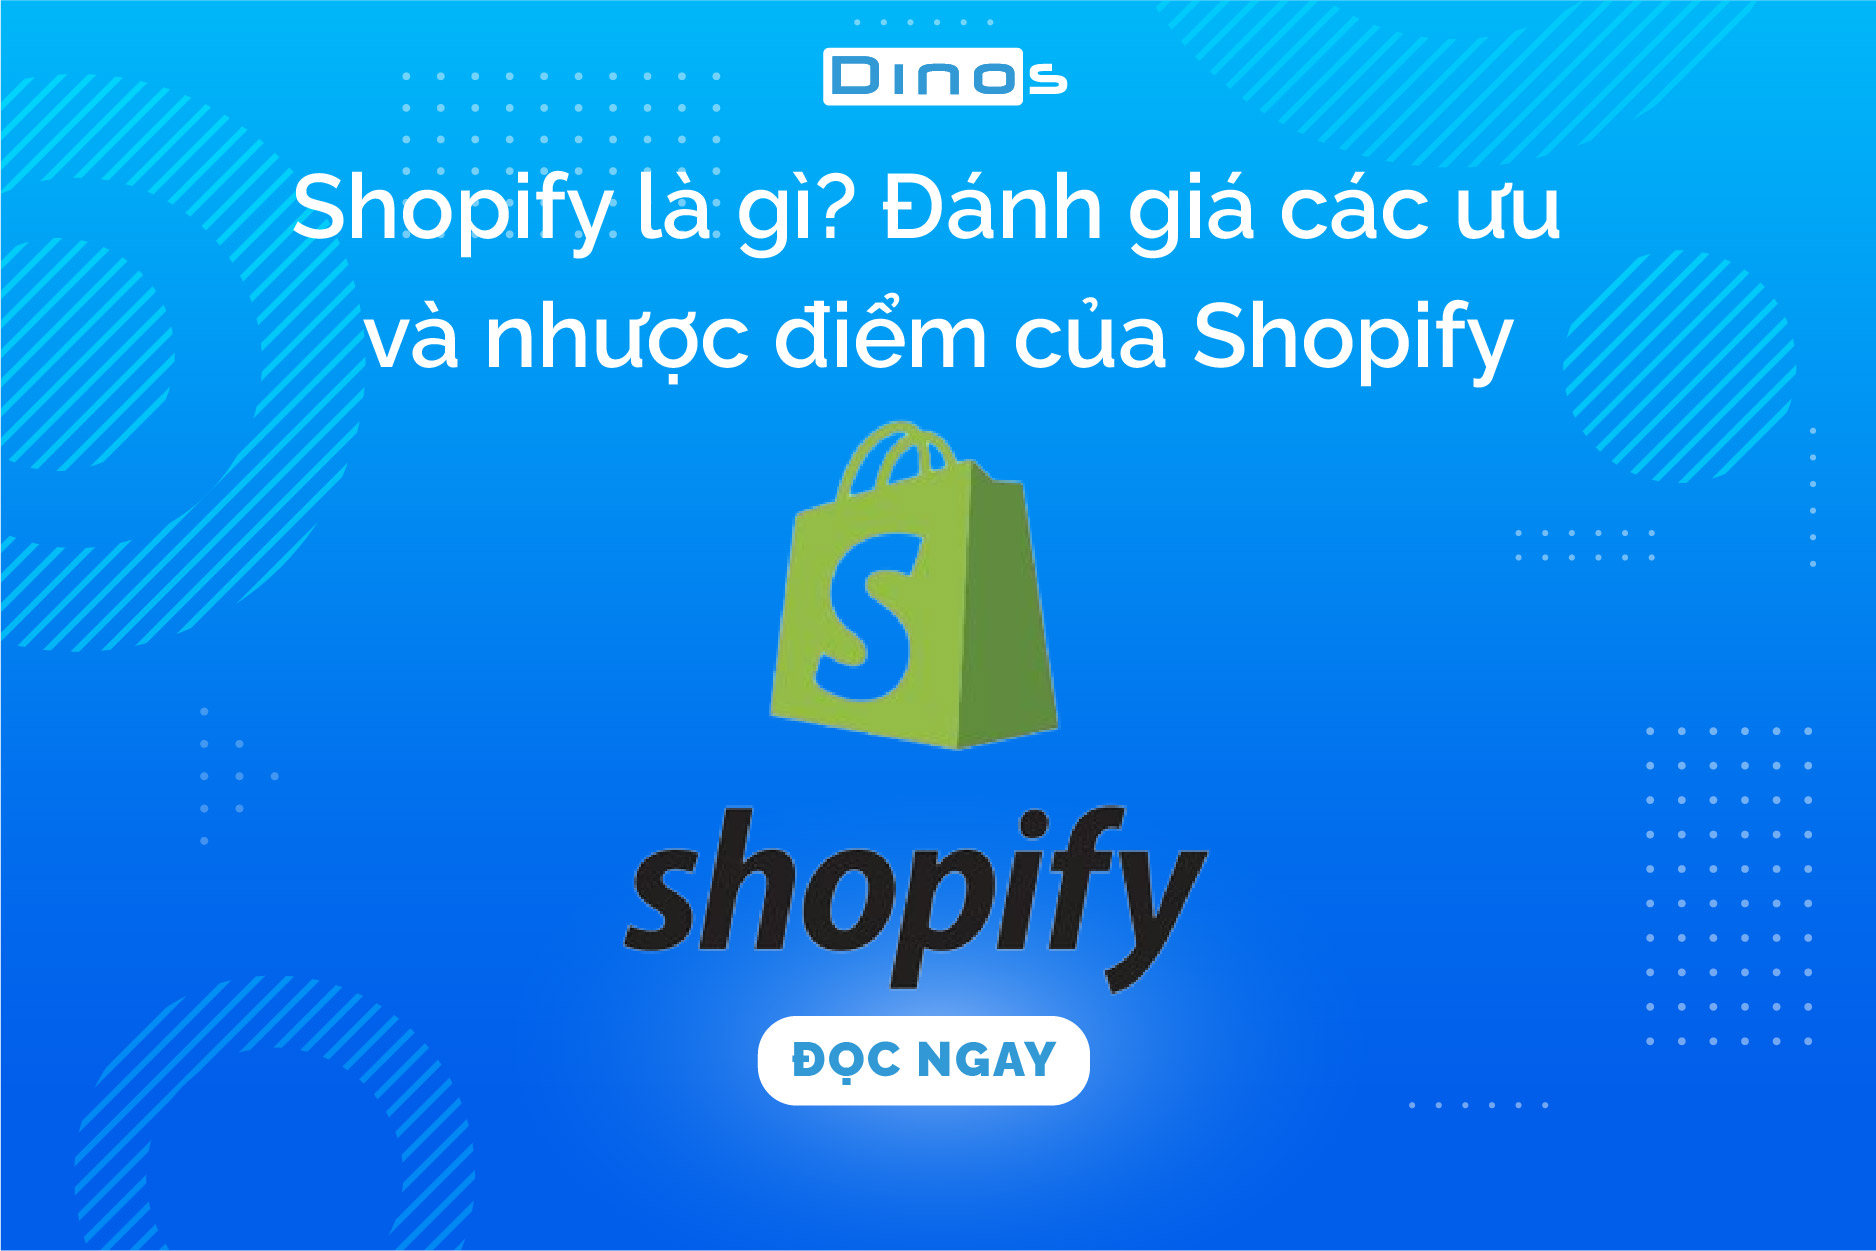 Shopify là gì? Đánh giá các ưu và nhược điểm của Shopify